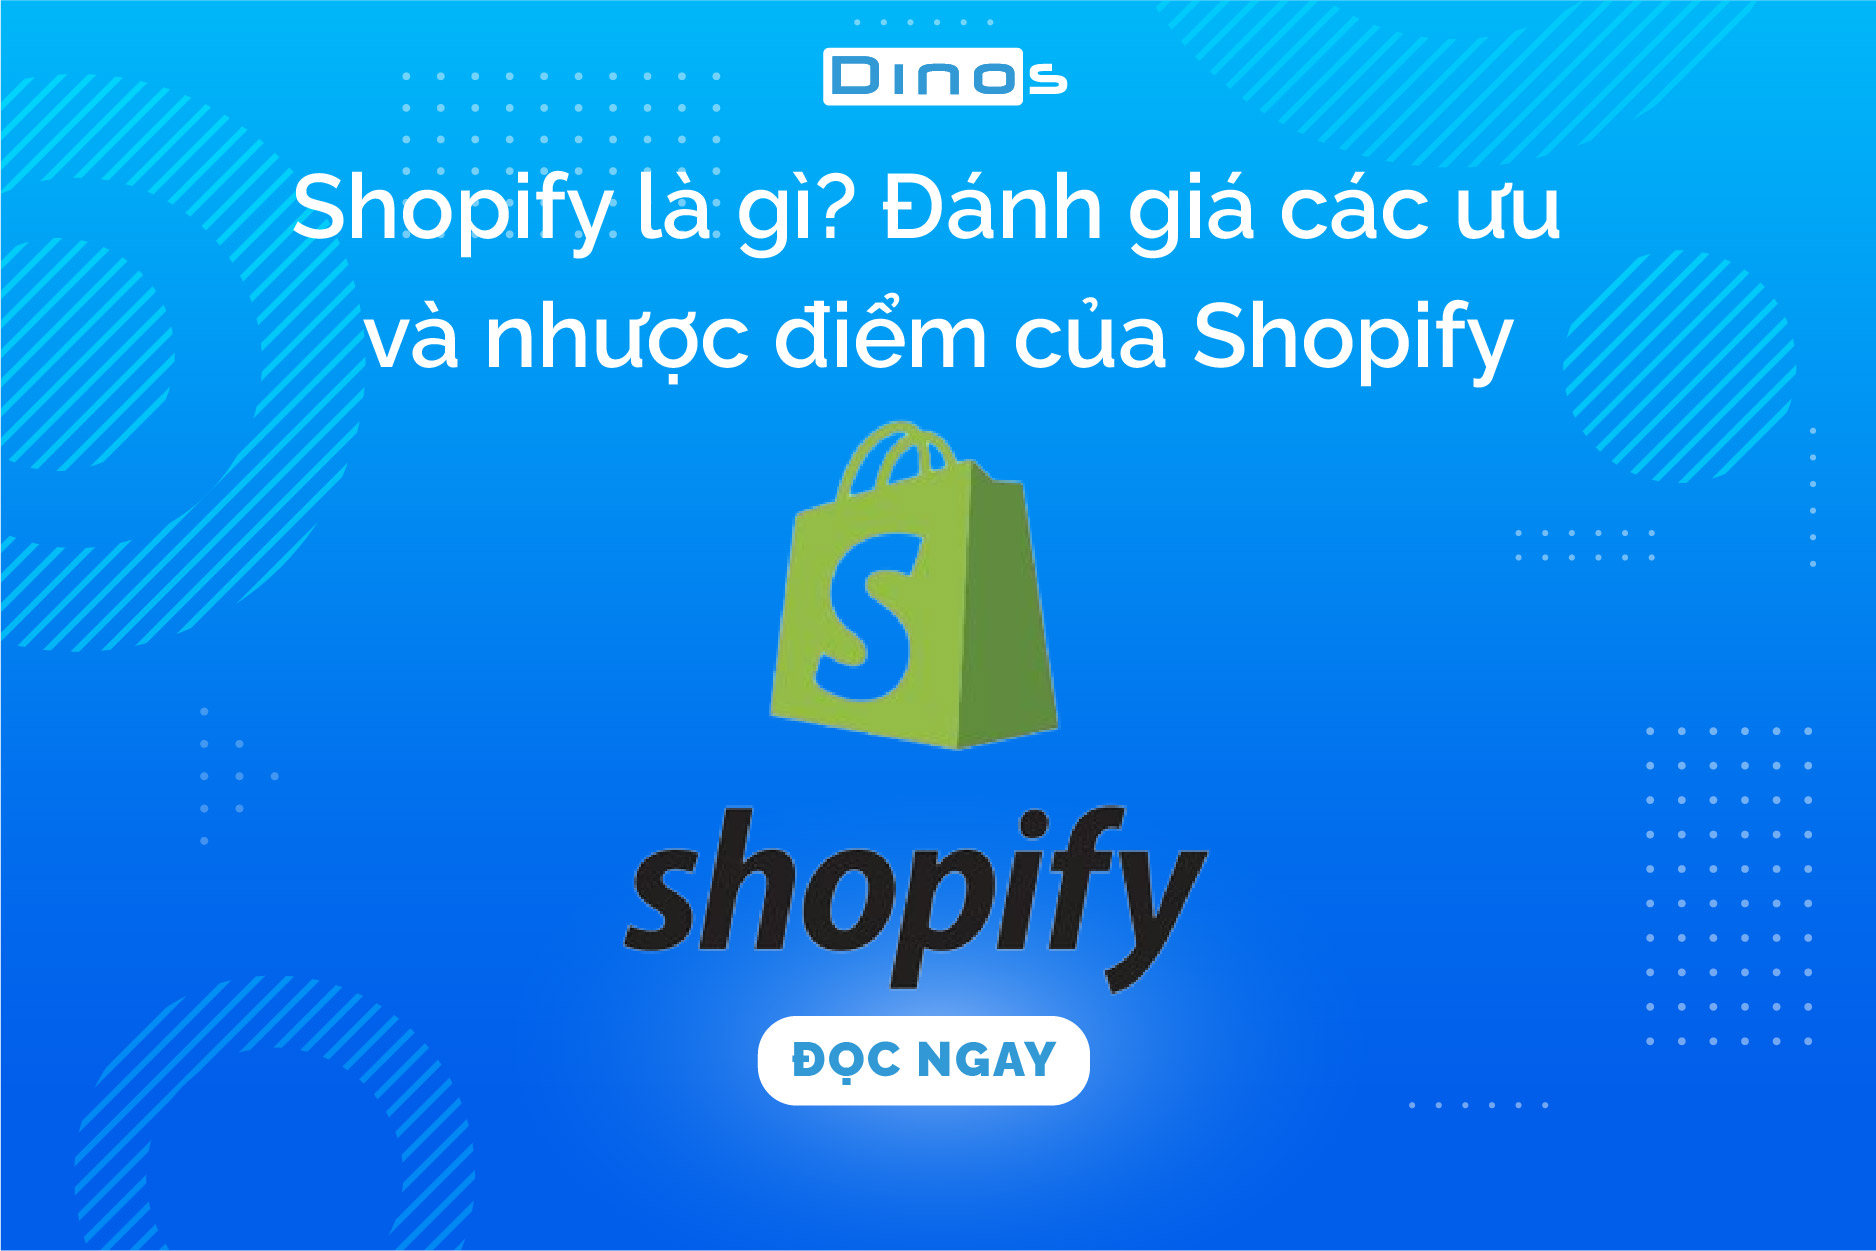 Shopify là gì? Đánh giá các ưu và nhược điểm của Shopify